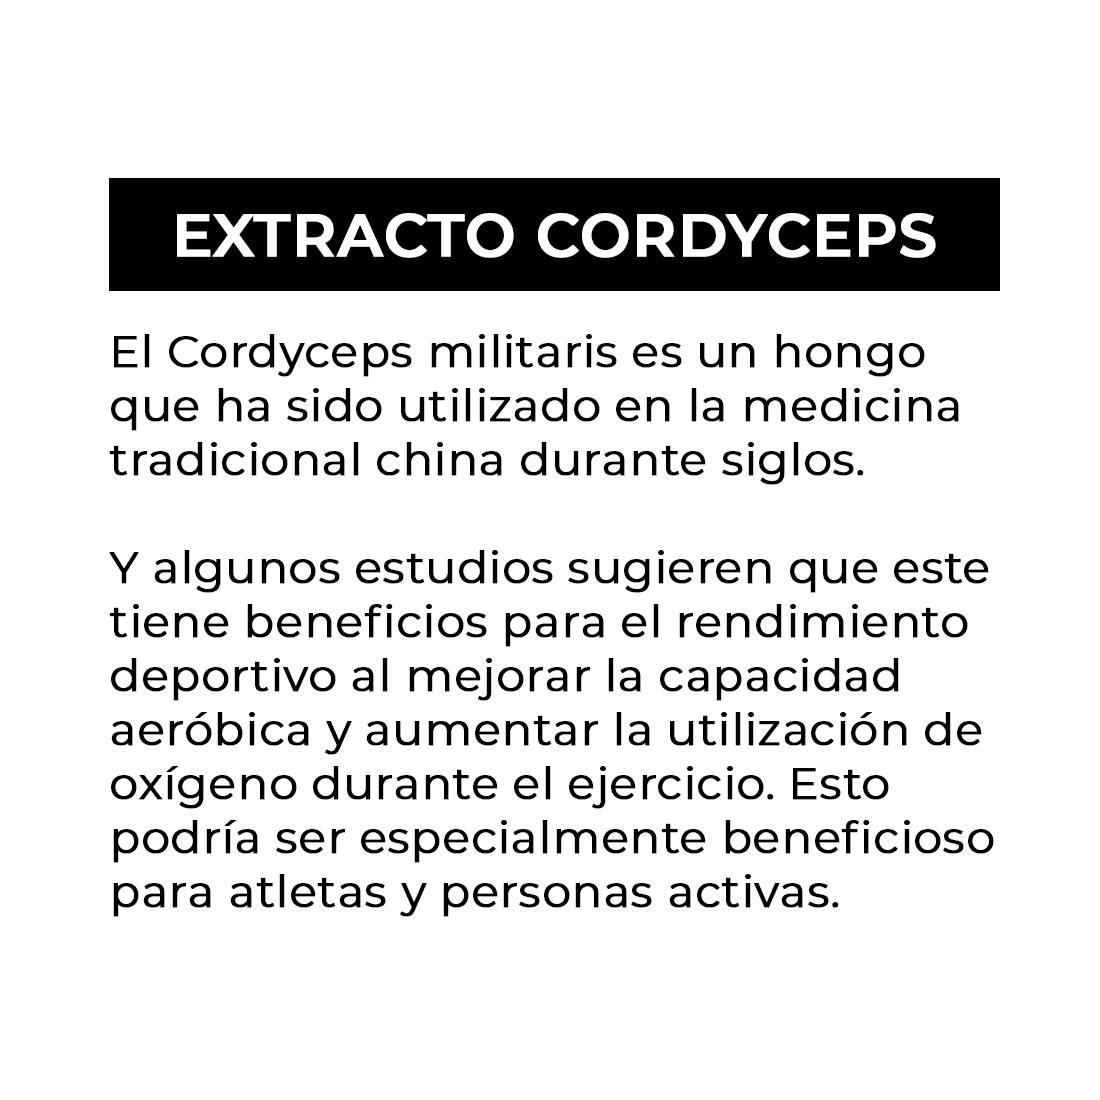 EXTRACTO CORDYCEPS MILITARIS